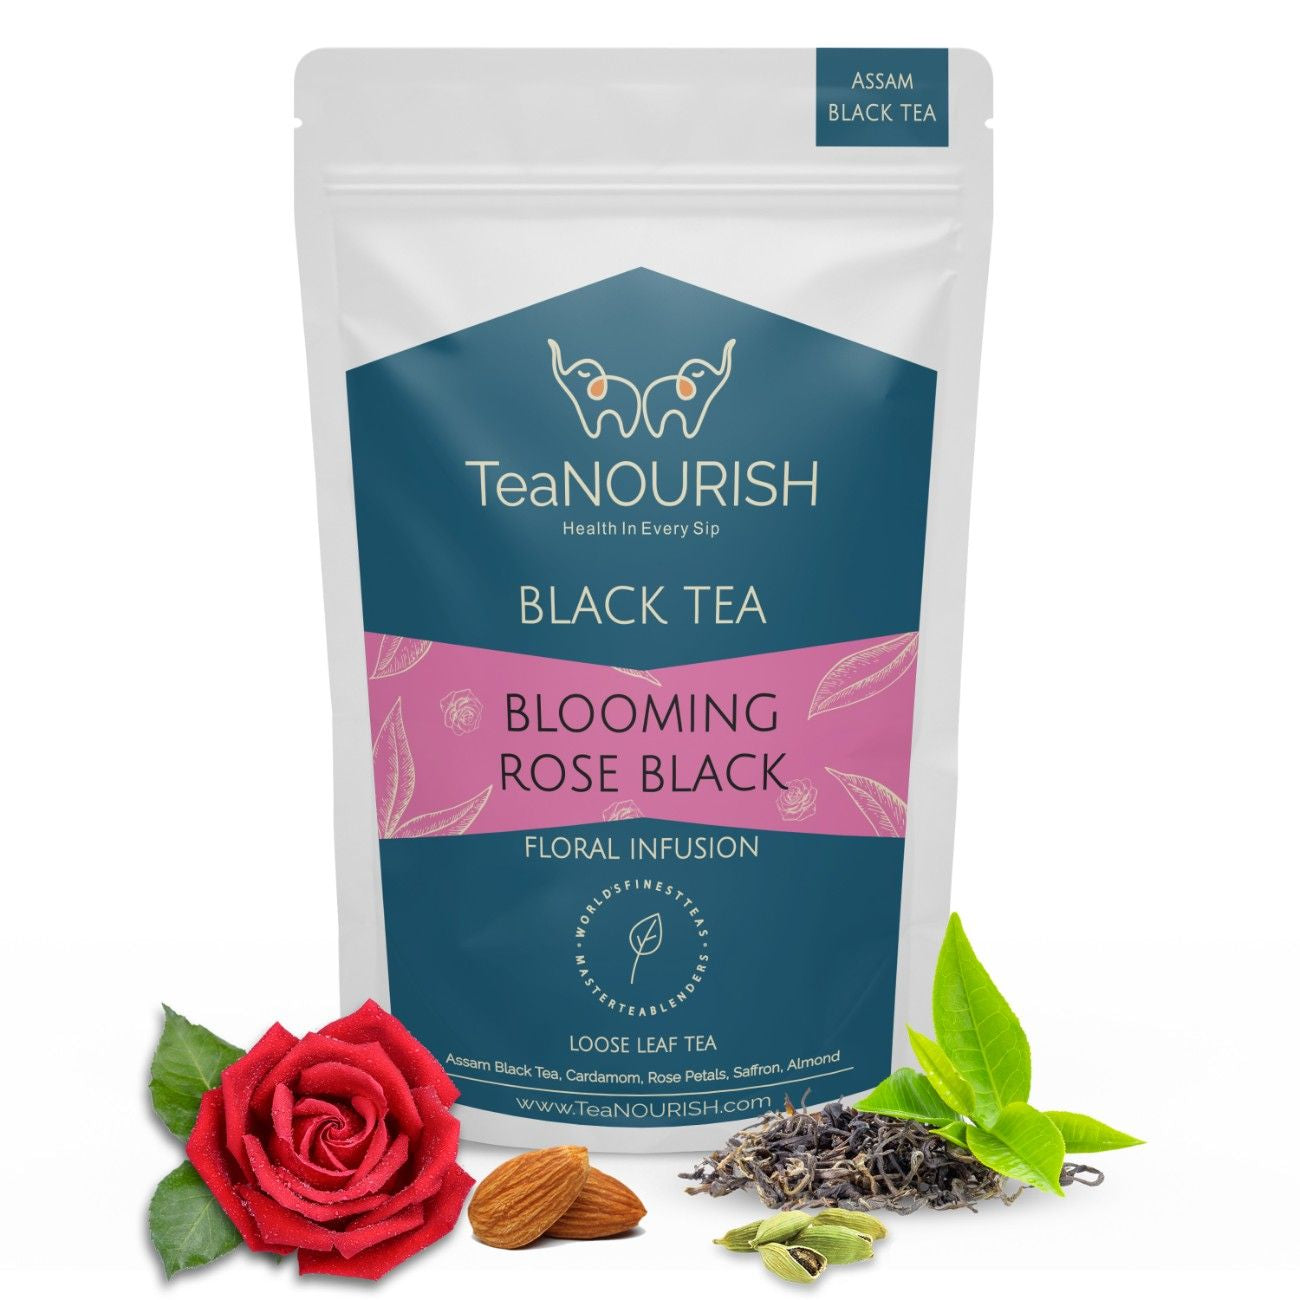 Blooming Rose Black Tea